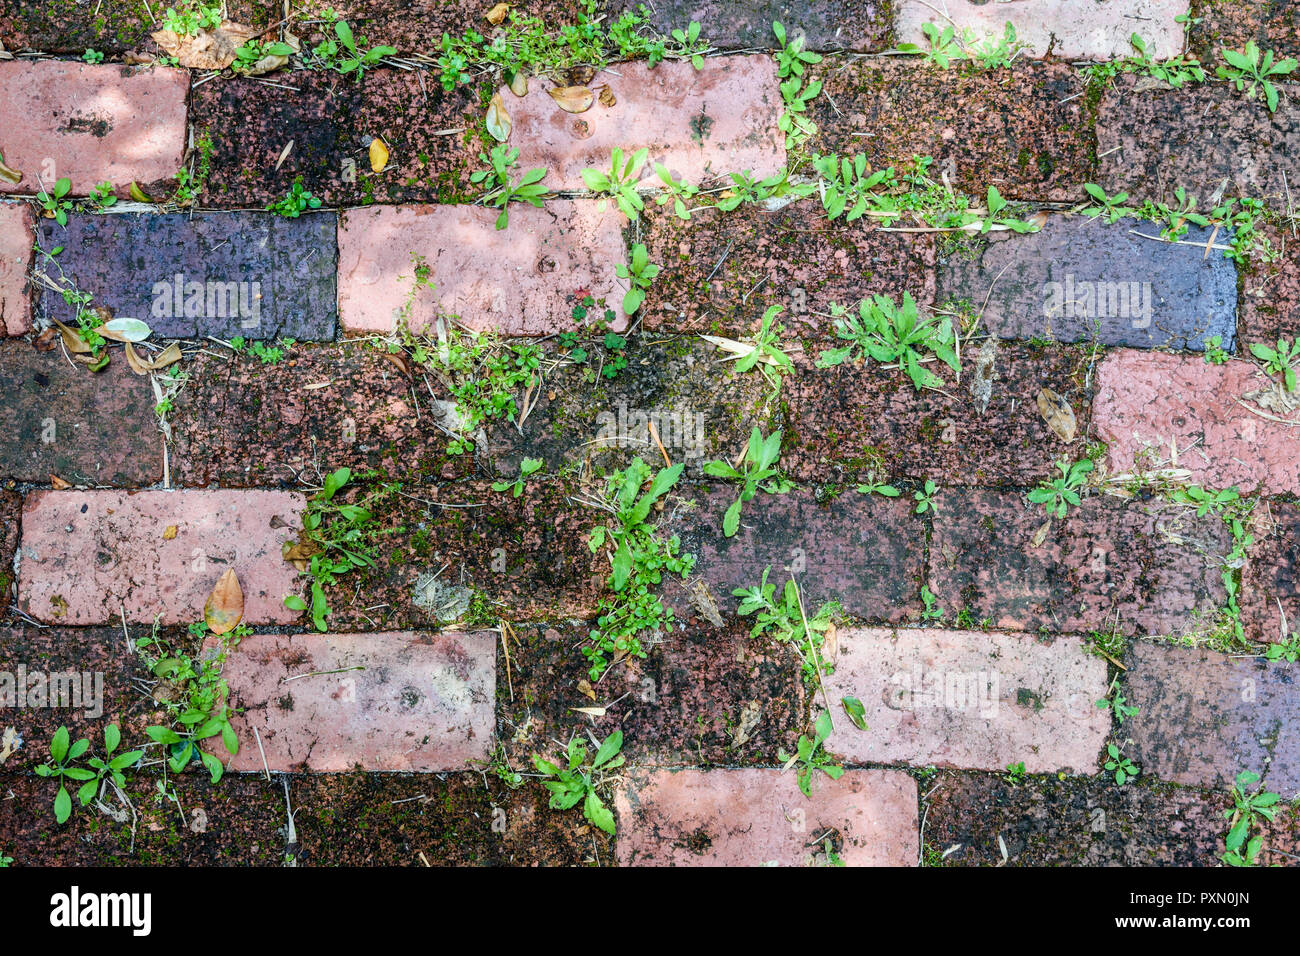 Weeds growing between bricks Stock Photo